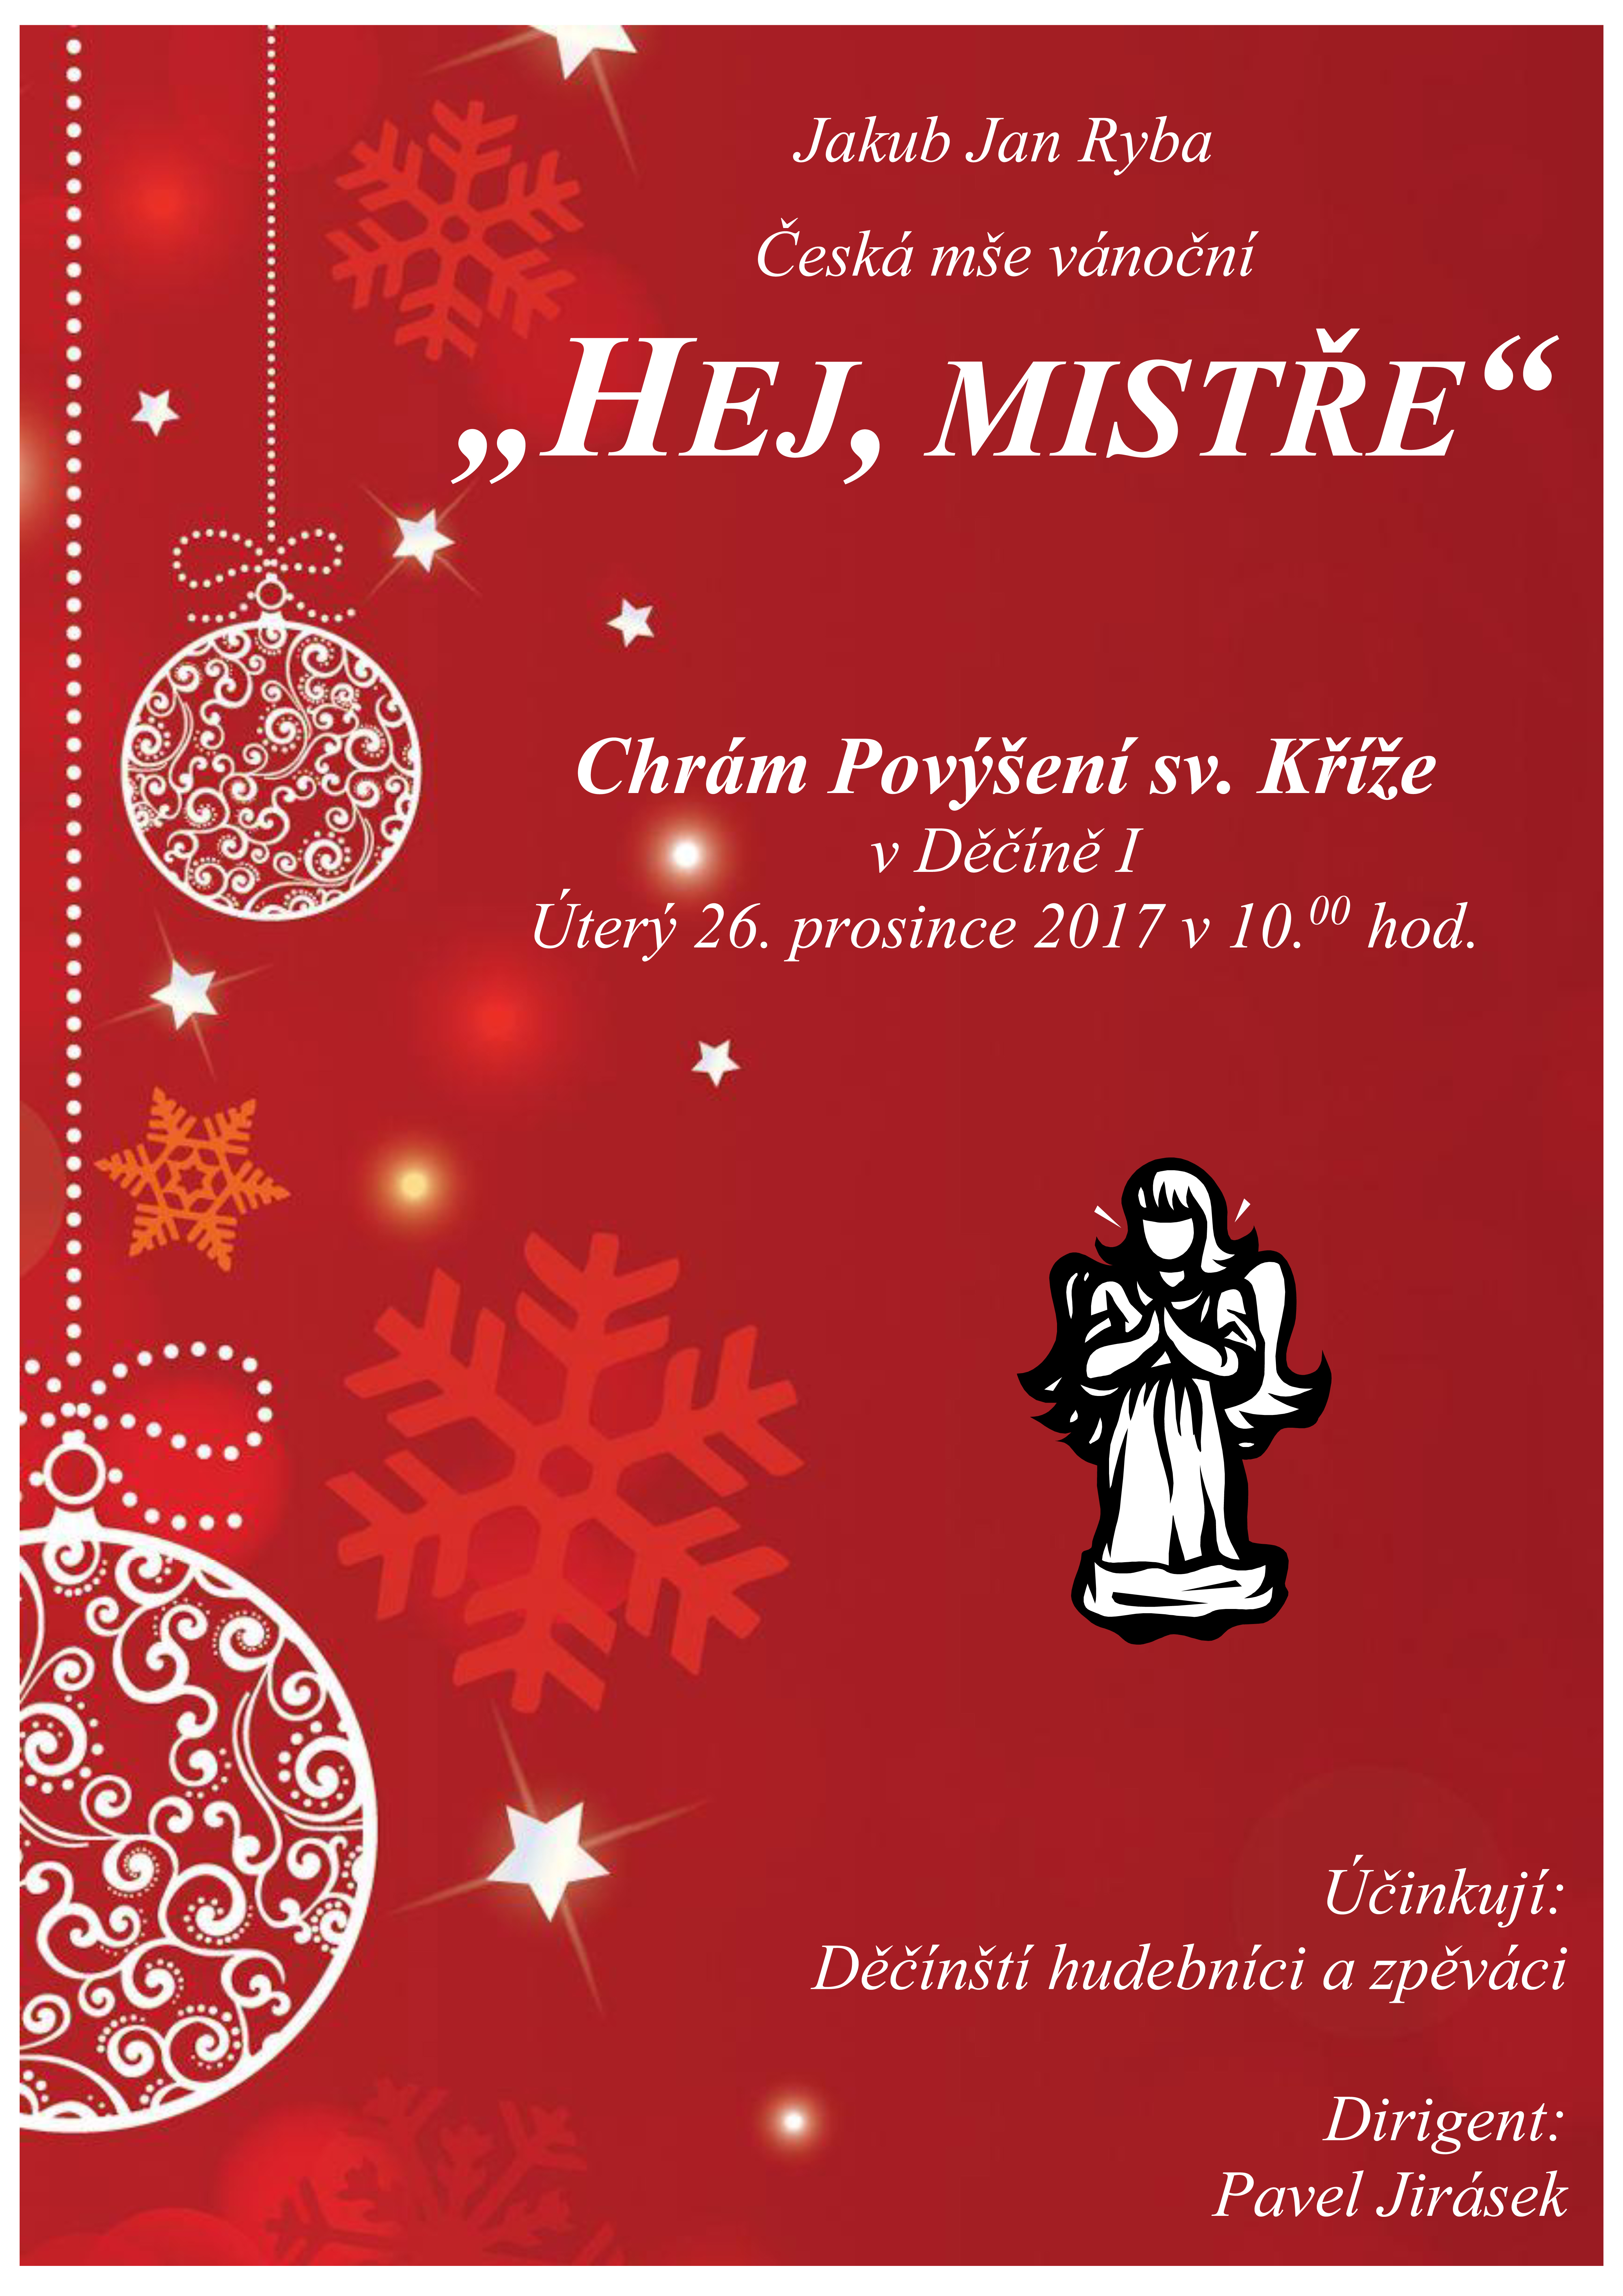 Plakát akce J. J. Ryba - Česká mše vánoční